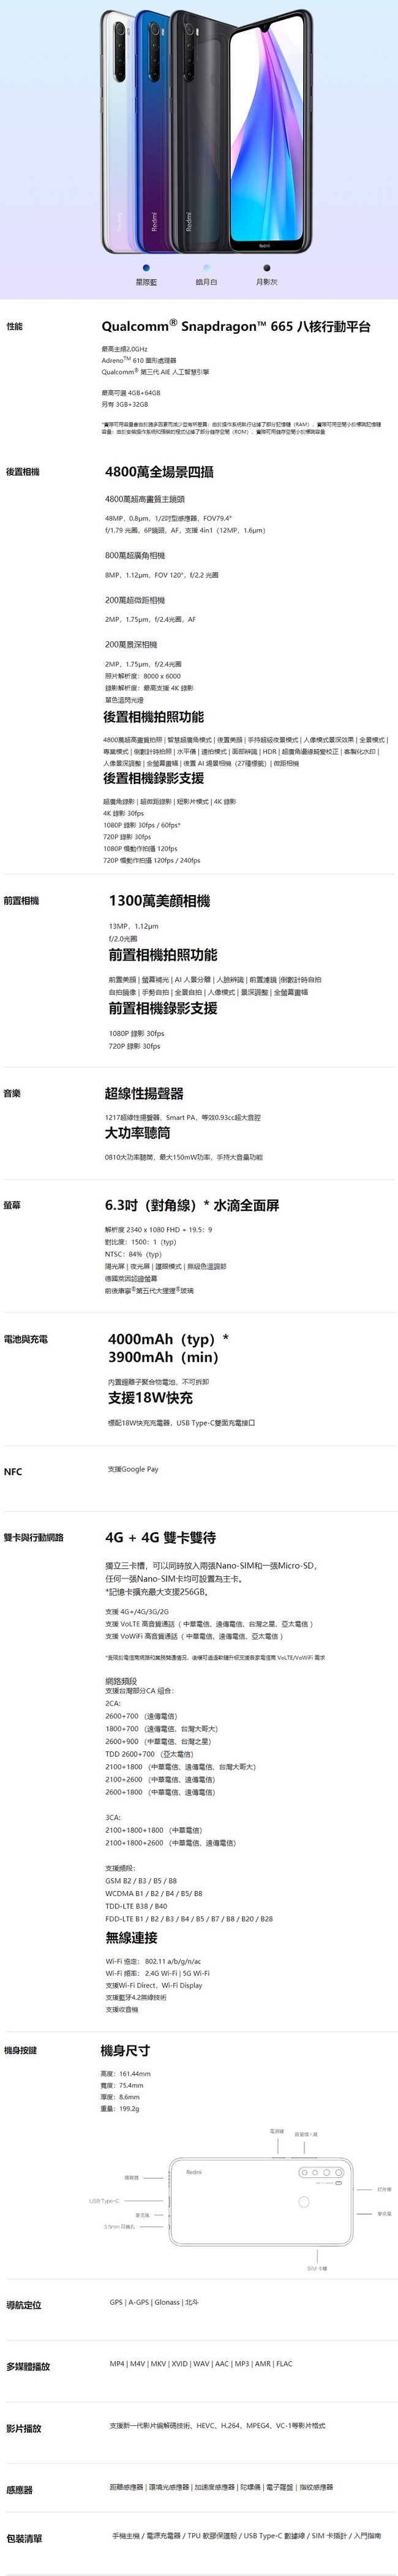 紅米 Redmi Note 8T (4G/64G) 6.3吋八核心智慧手機